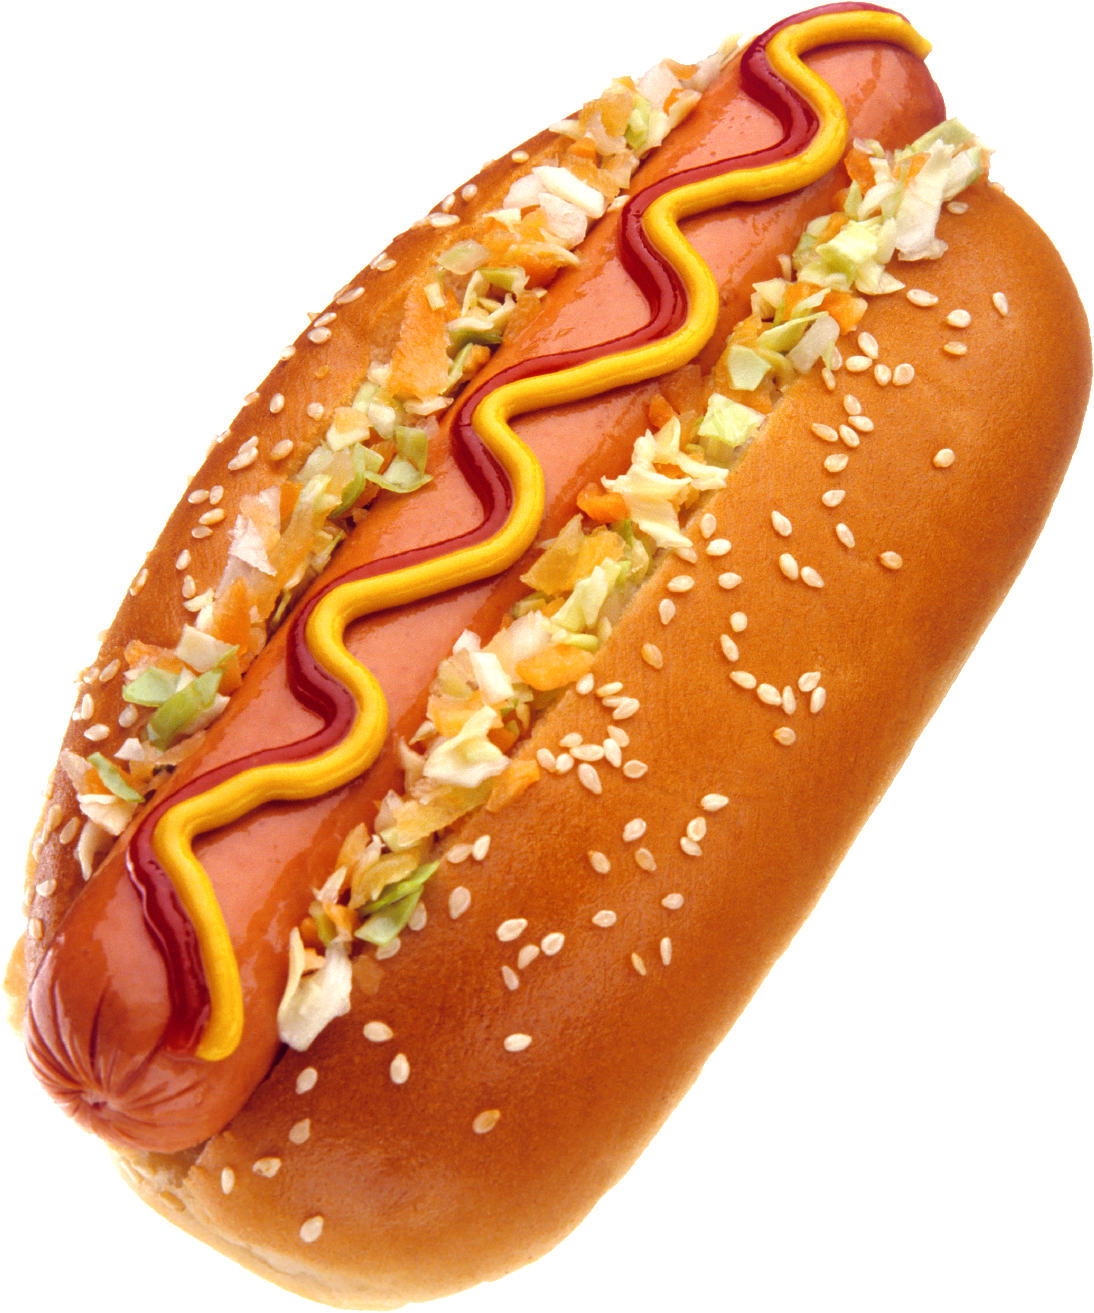 Hot Dog, Sandwich, Hot-Dog, F